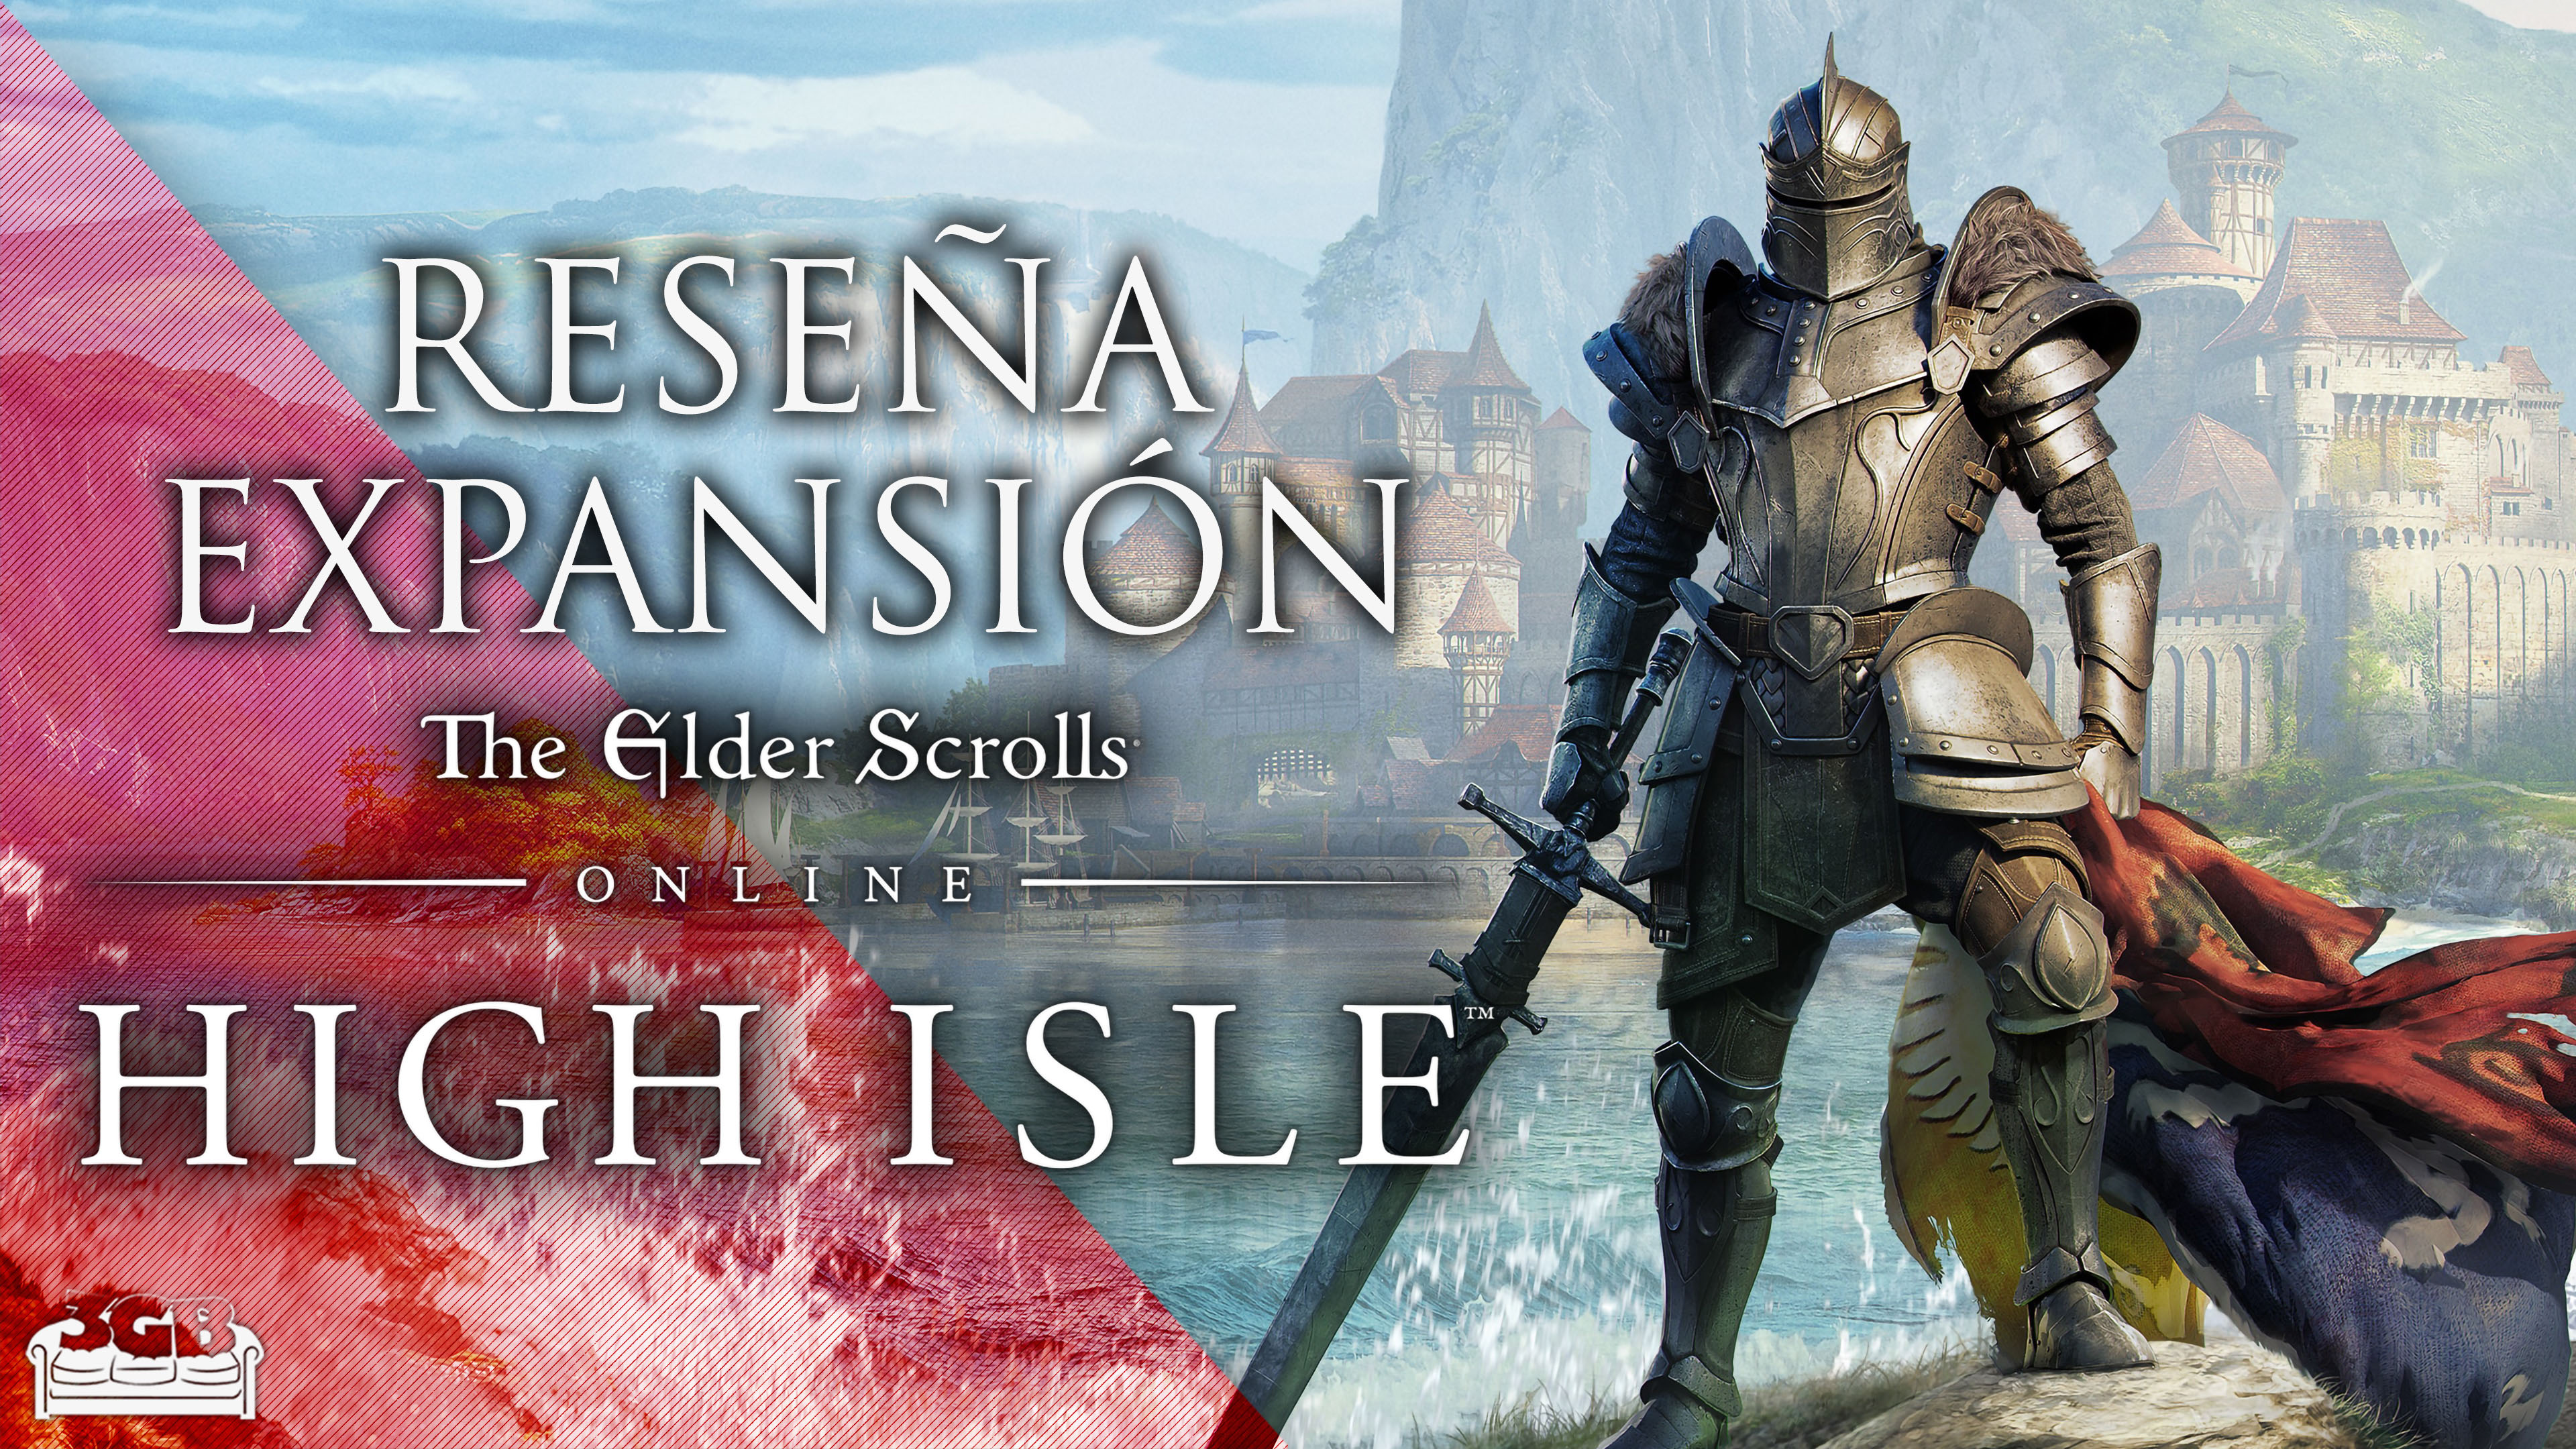 Reseña Expansión The Elder Scrolls Online: High Isle – Finalmente con traducción al español